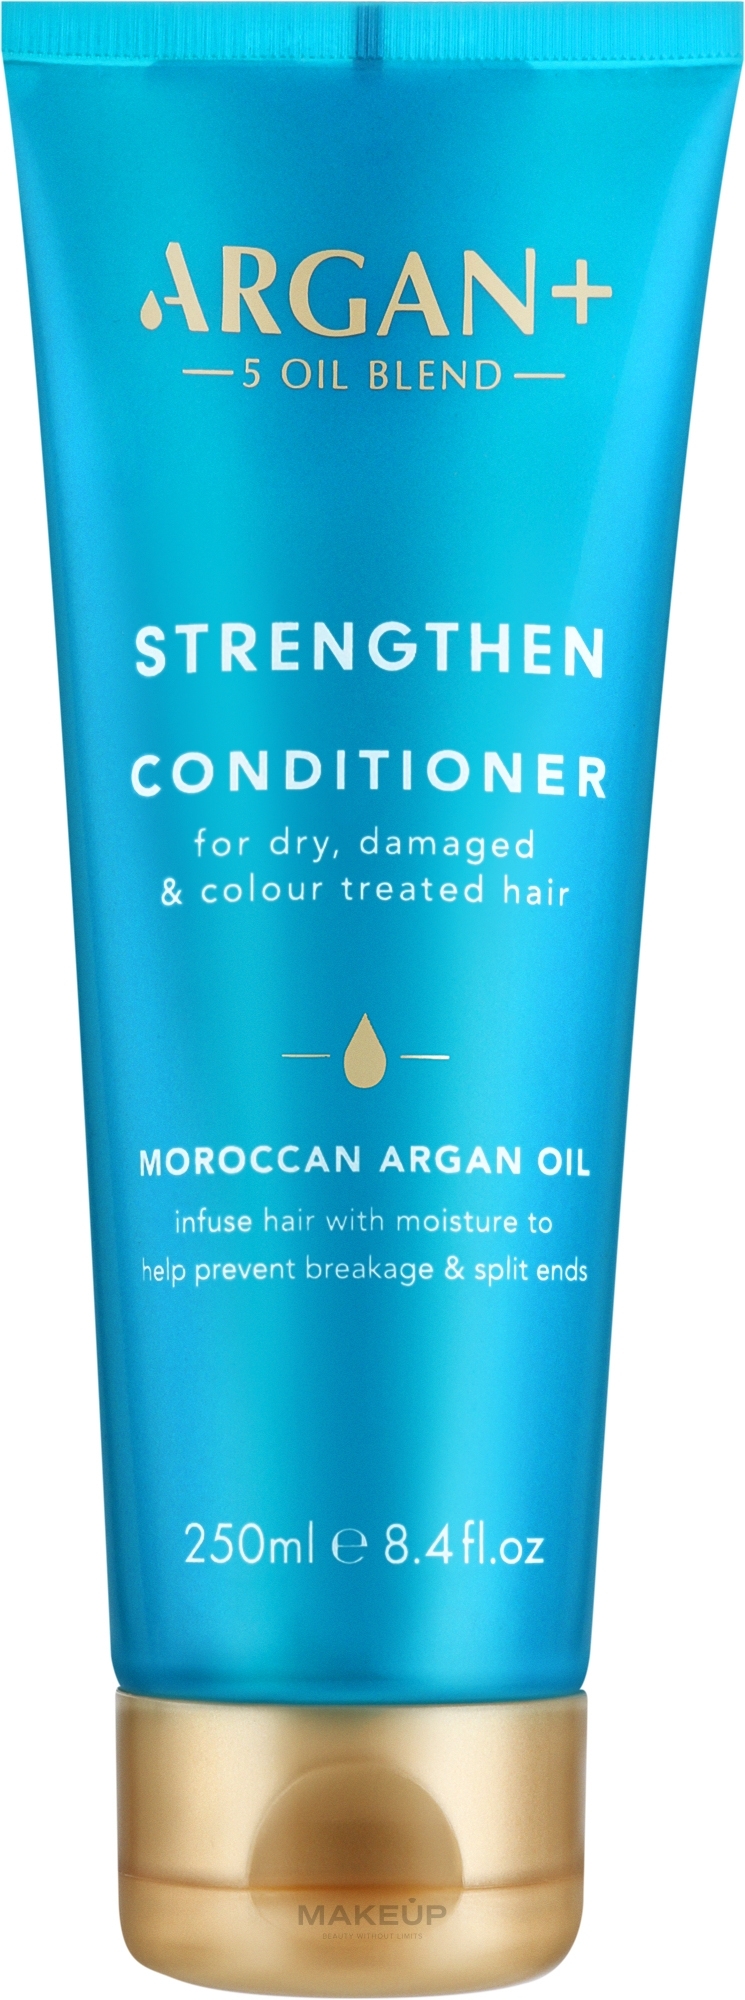 Кондиционер для сухих, поврежденных и окрашенных волос - Argan+ Strengthen Conditioner Morocco Argan Oil — фото 250ml